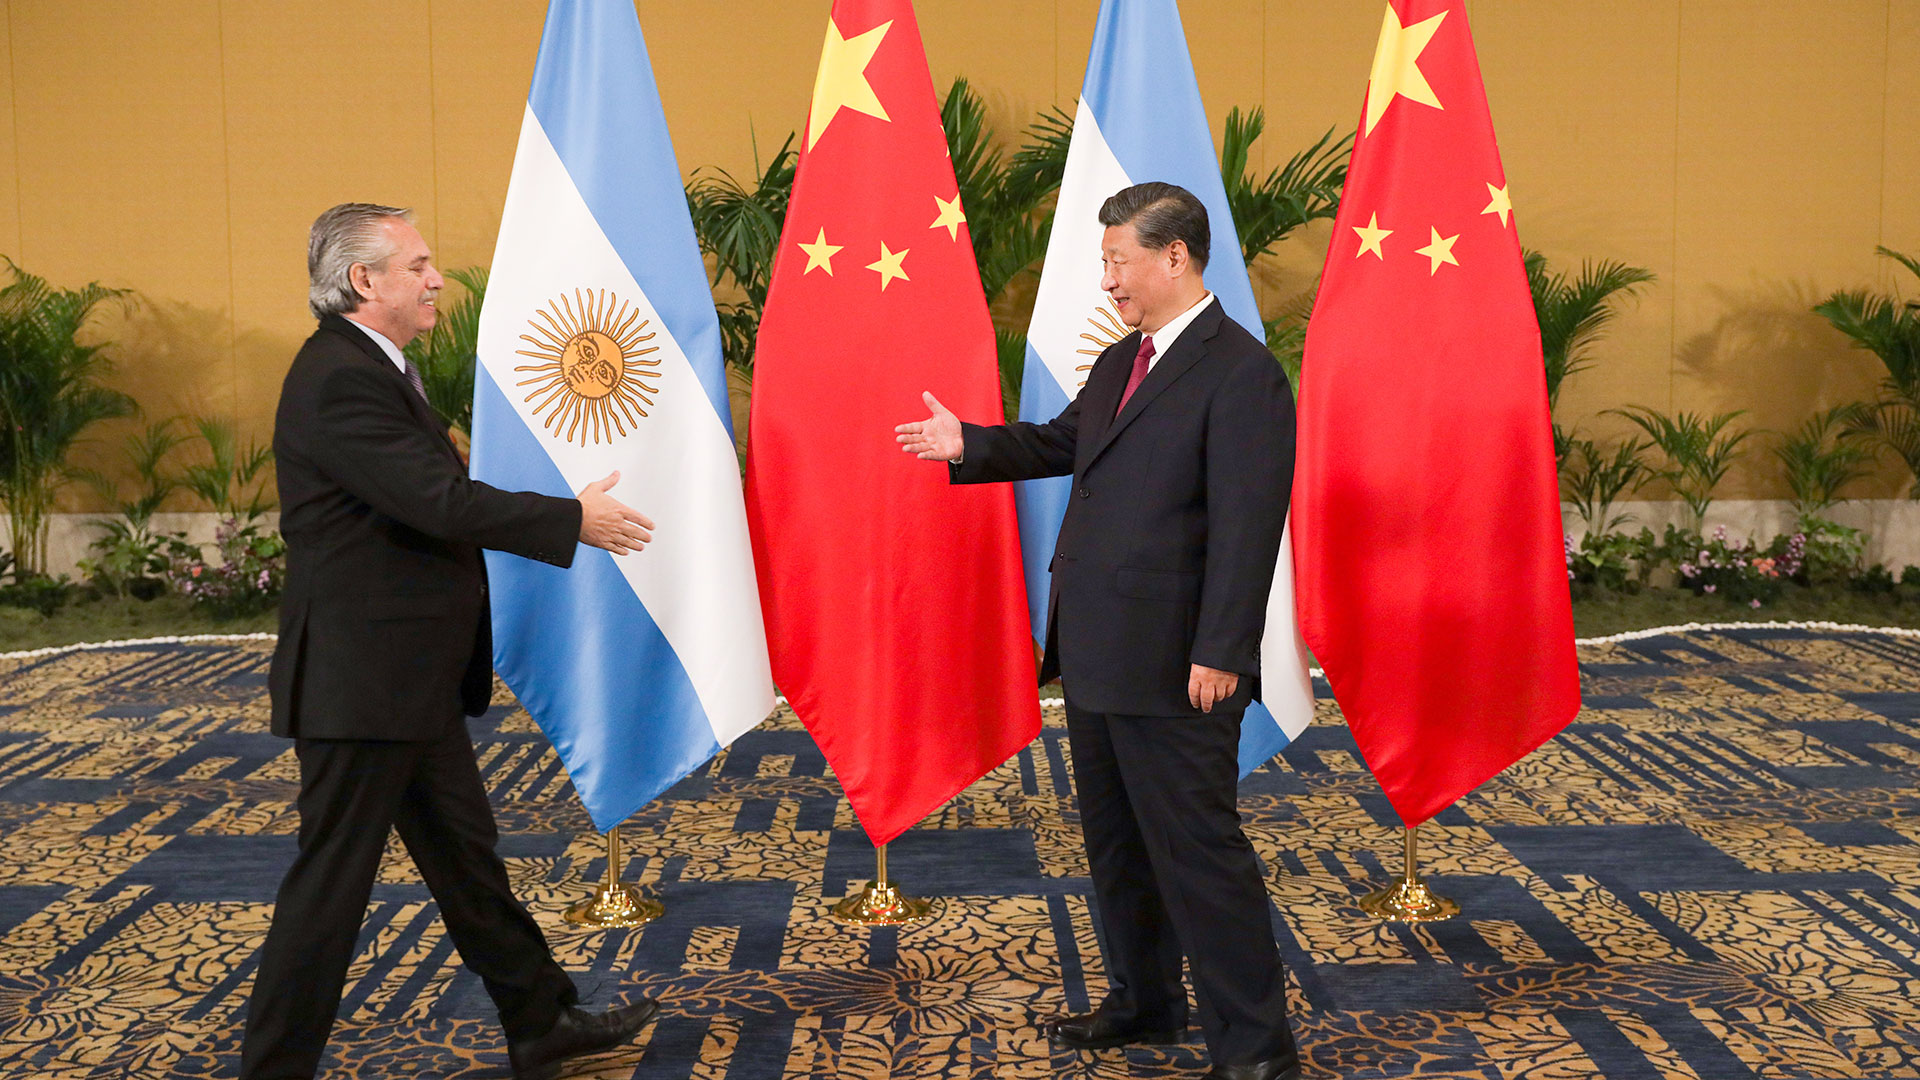 Alberto Fernández y el presidente chino, Xi Jinping, el 15 de noviembre pasado, en Indonesia. El gobierno argentino informó la ampliación de un "canje" de monedas por el equivalente a USD 5.000 millones que Beijing no confirmó y del que no se conoce norma alguna